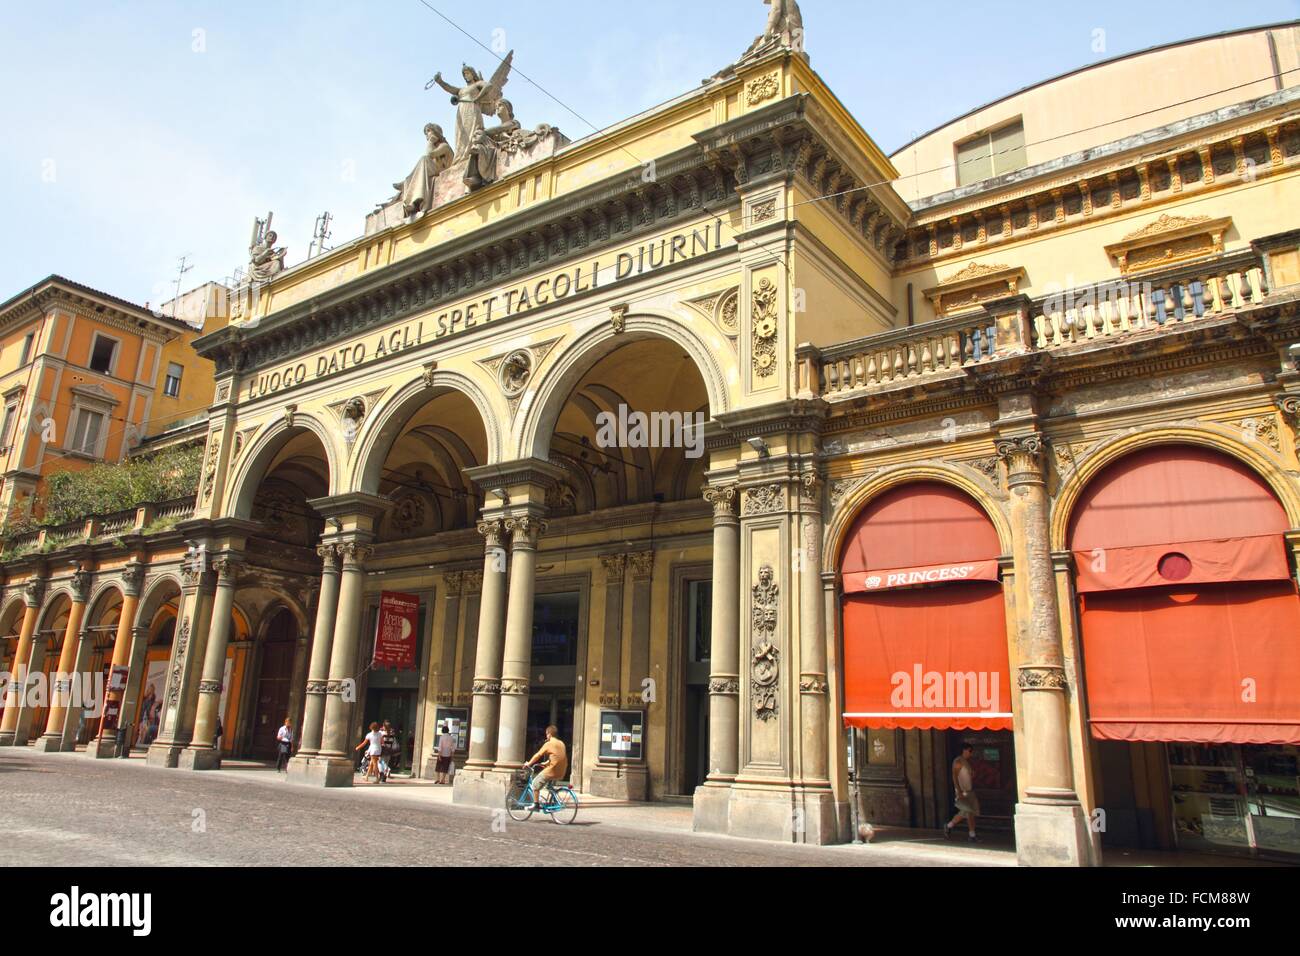 Teatro Arena del Sole. Bologna Italy Stock Photo - Alamy